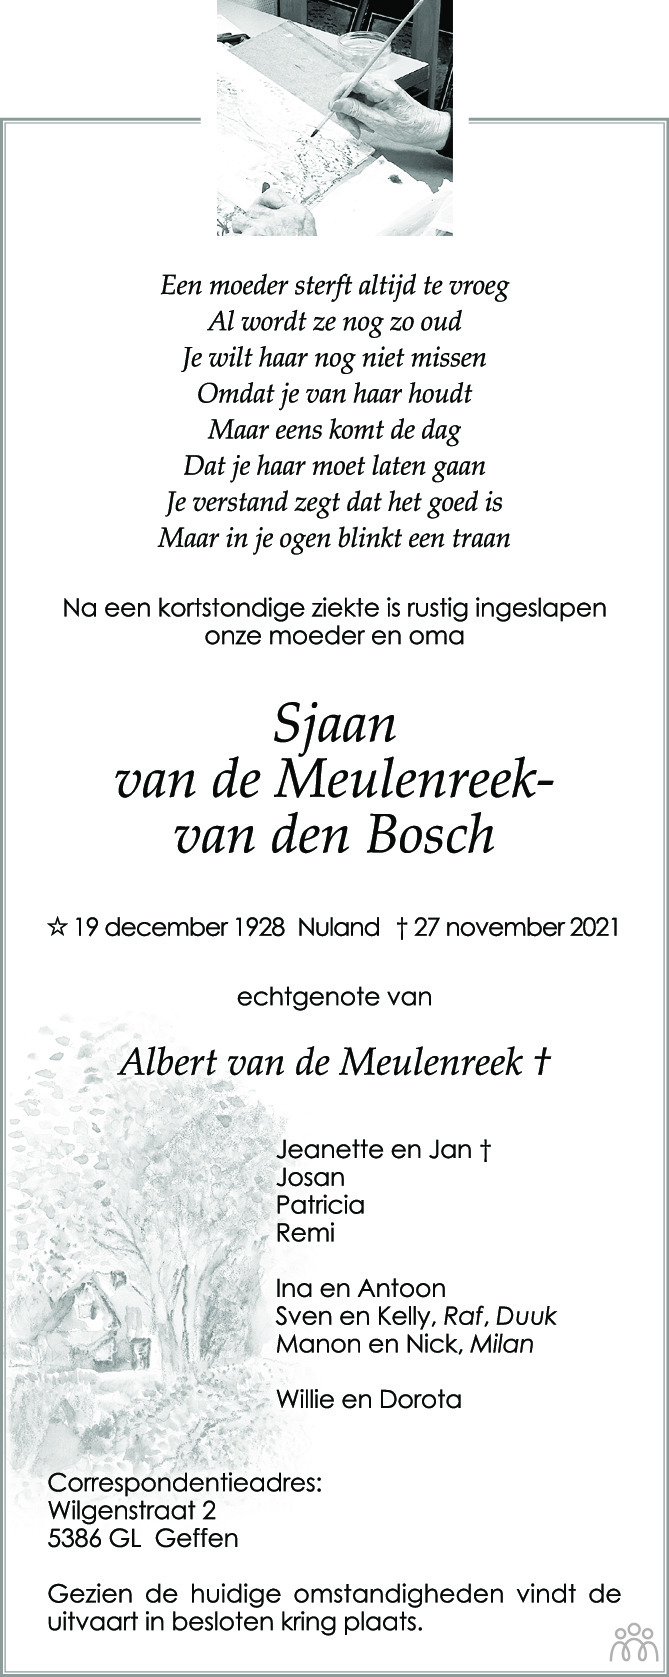 Overlijdensbericht van Sjaan van de Meulenreek-van den Bosch in Brabants Dagblad